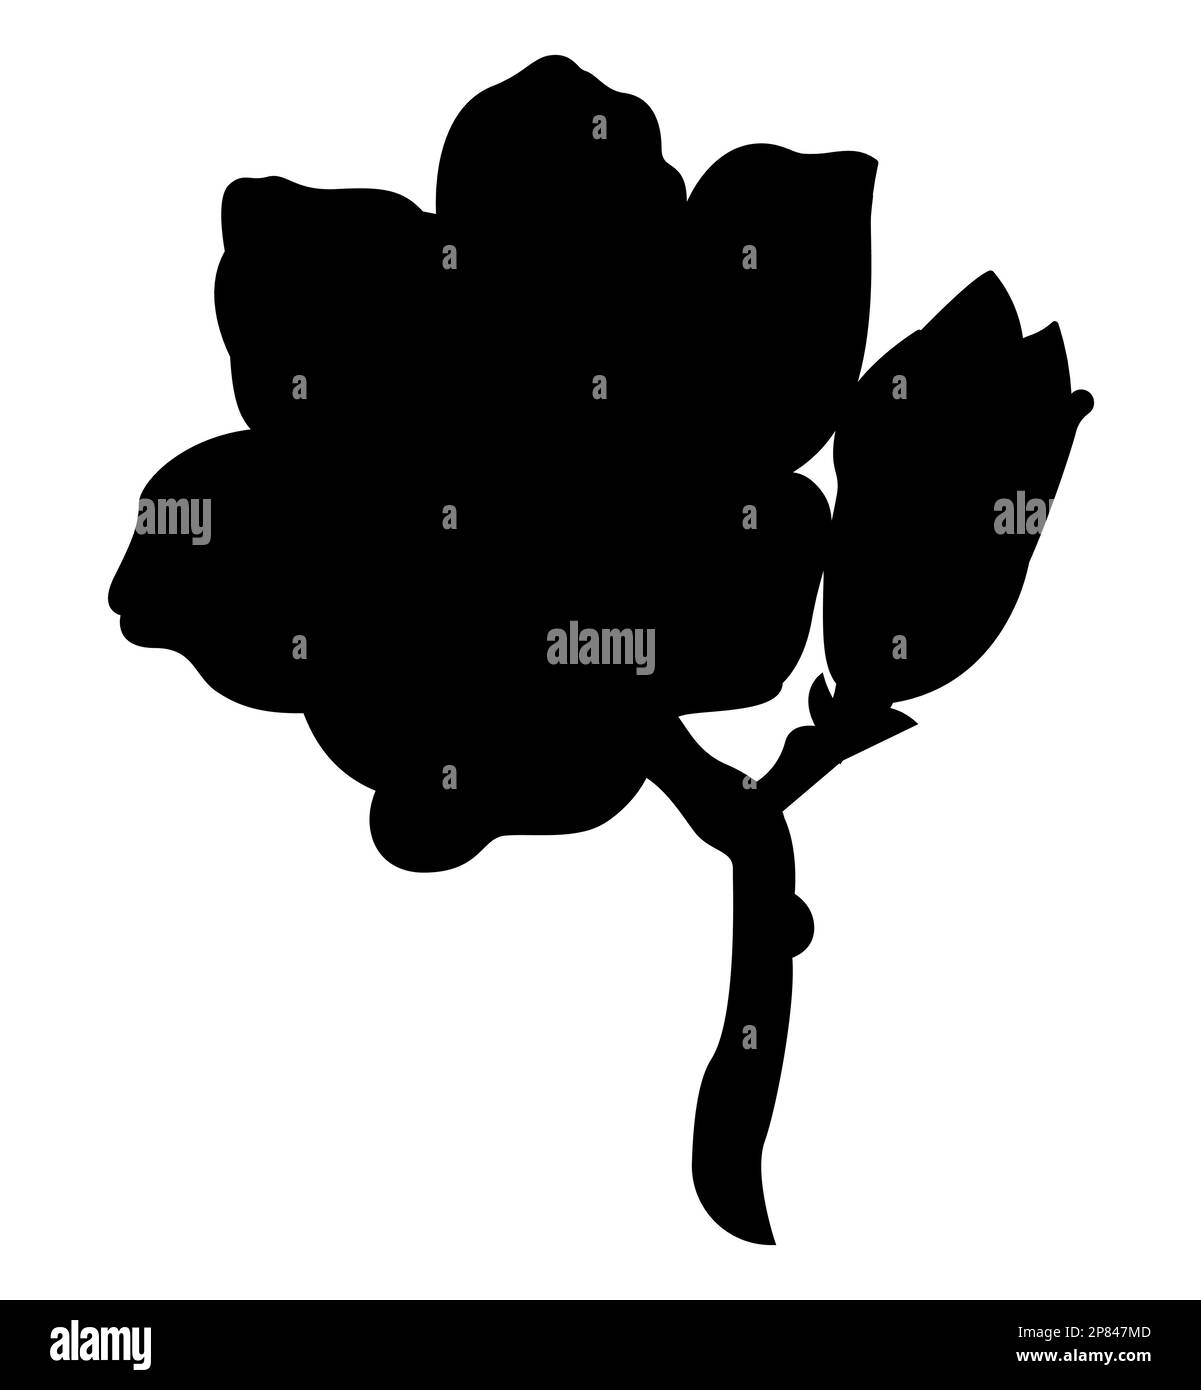 Black Silhouette of Japanese anemone flower, Trendy Modern Stock Vector